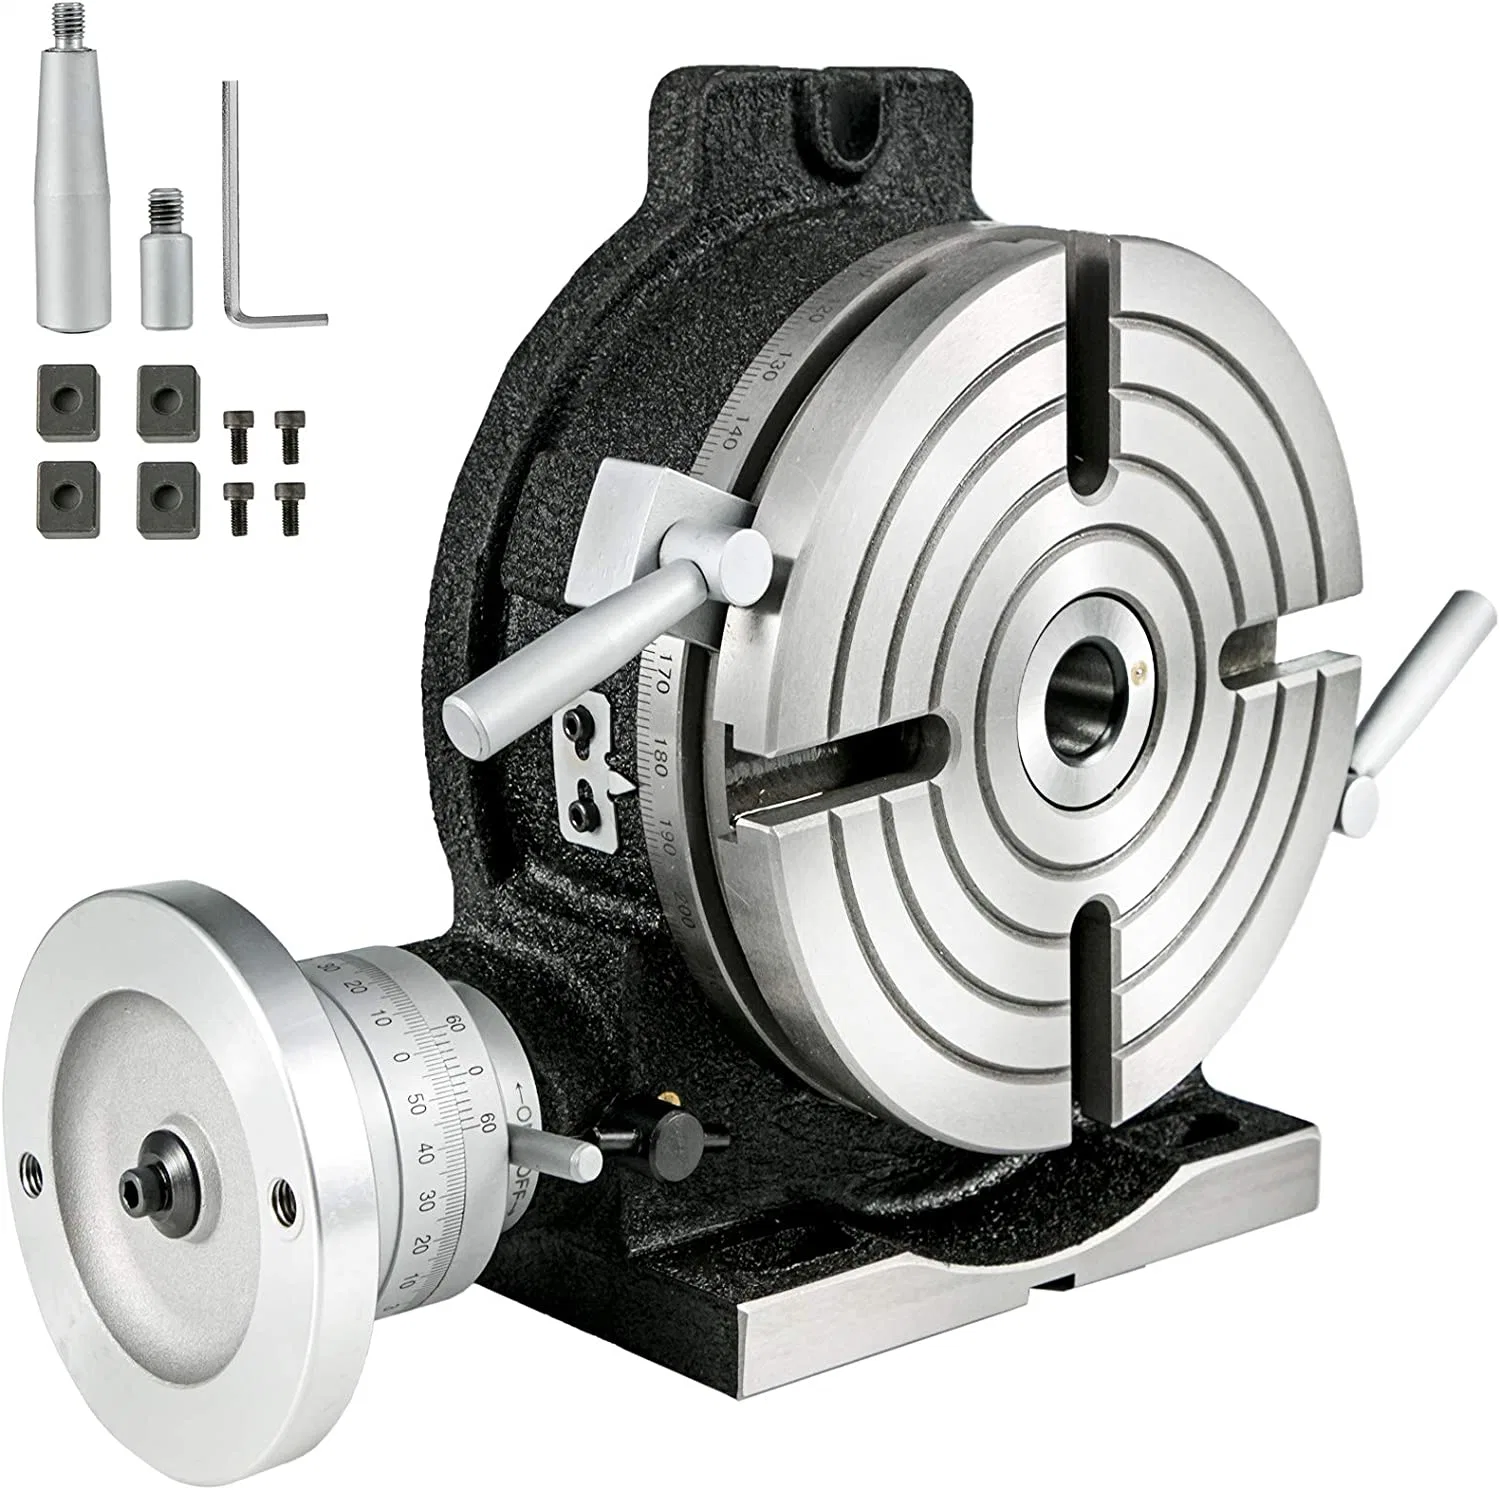 Mesa rotativa manual de alta calidad Tsl250 para máquina de perforación, tamaño de mesa 250